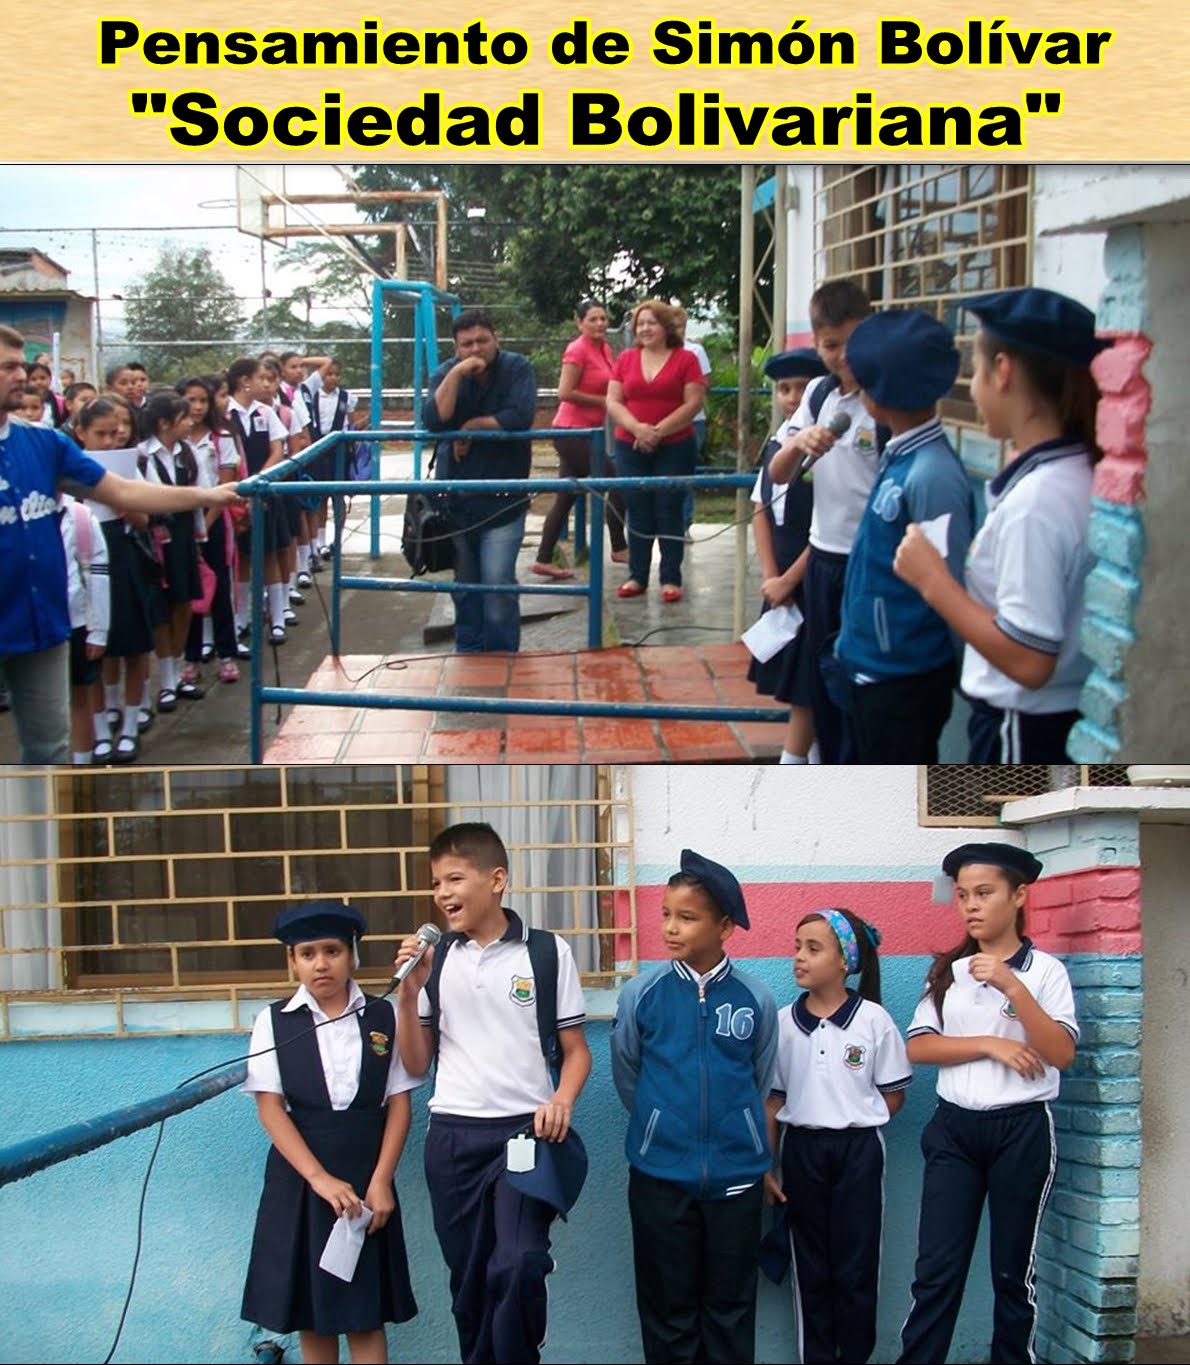 Sociedad Bolivariana